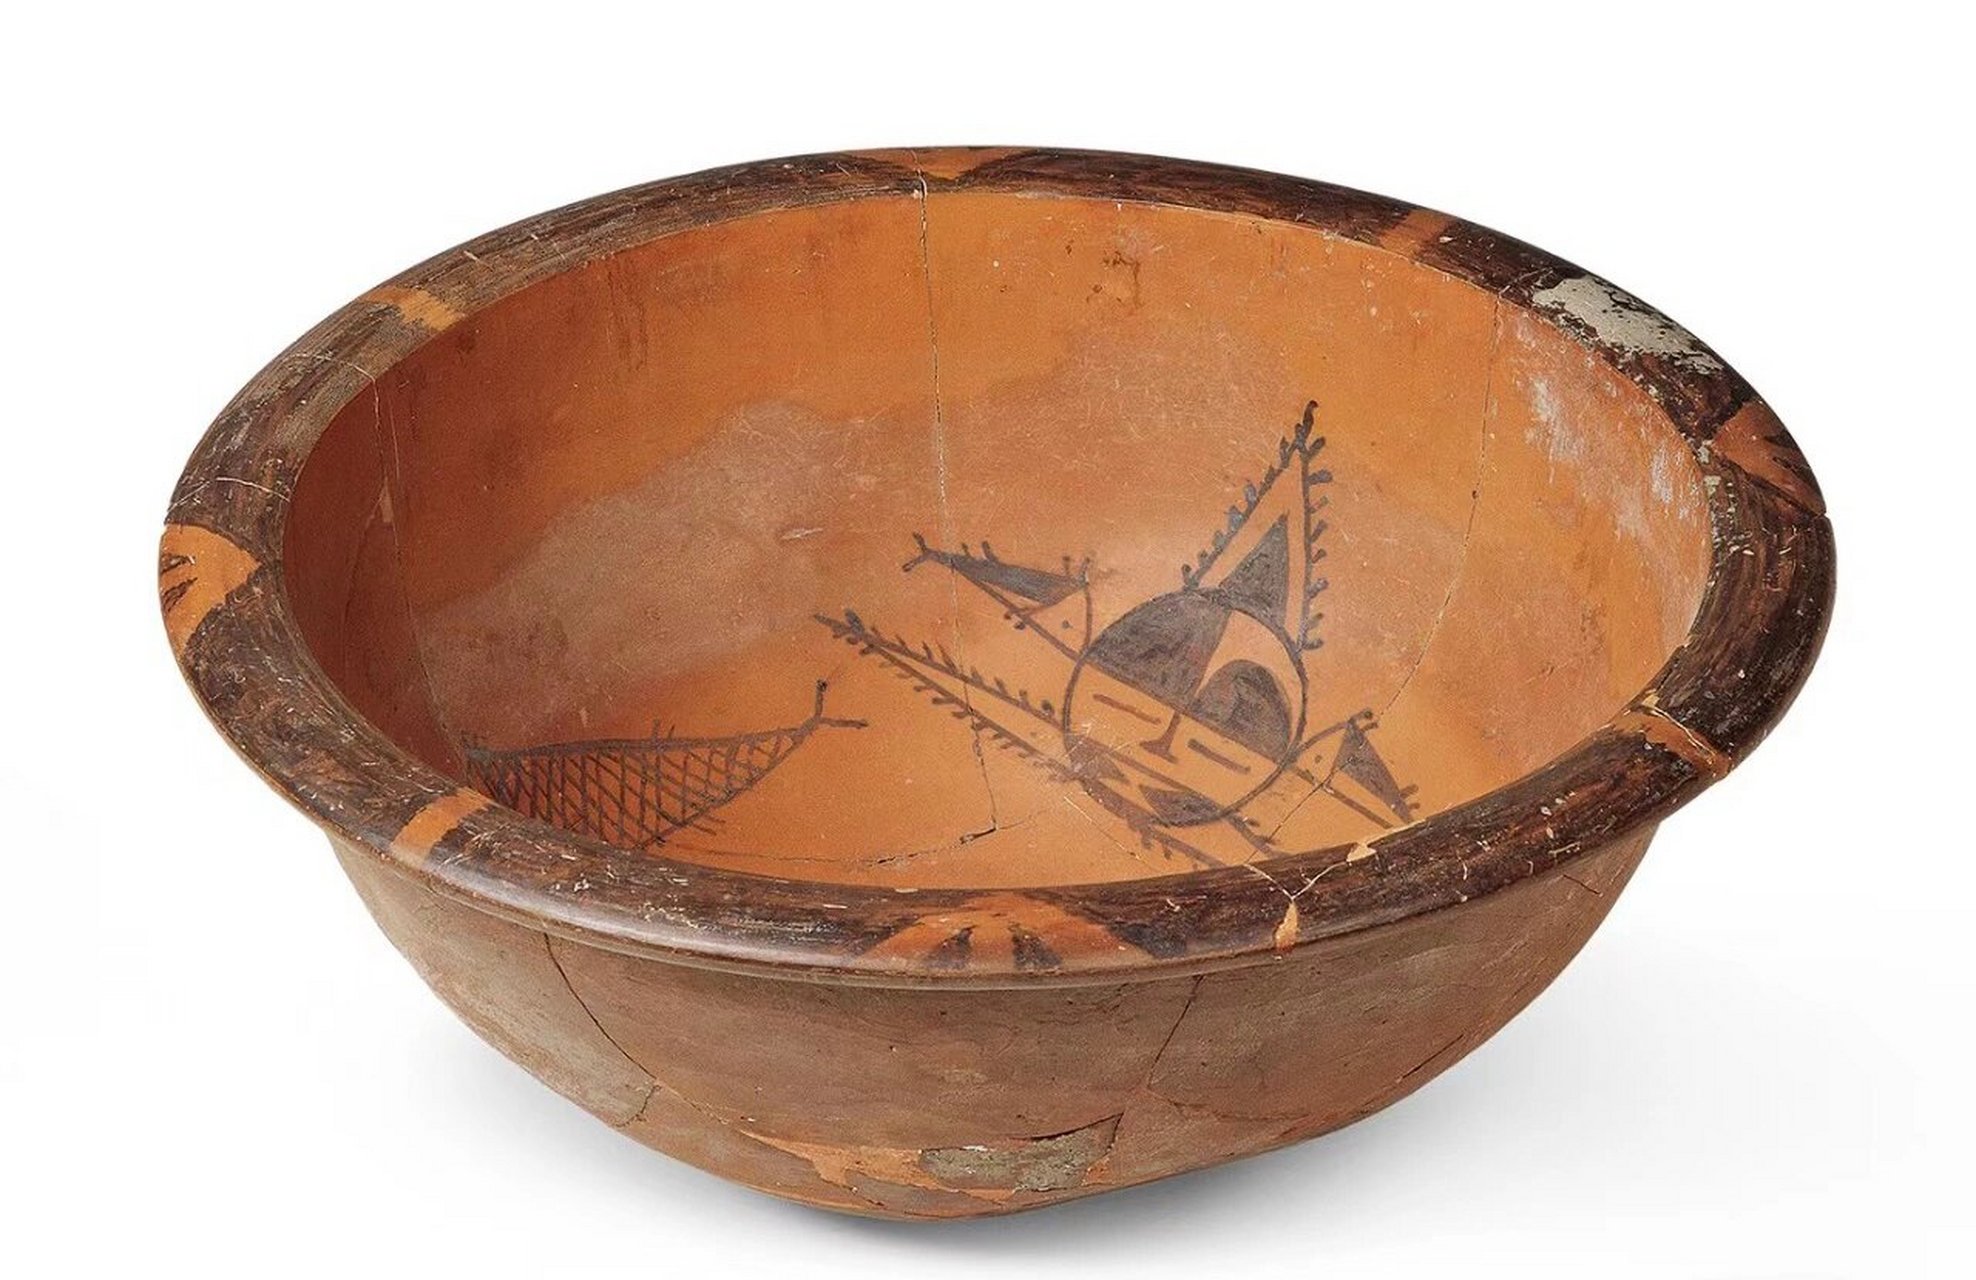 仰韶文化彩陶成型方法图片